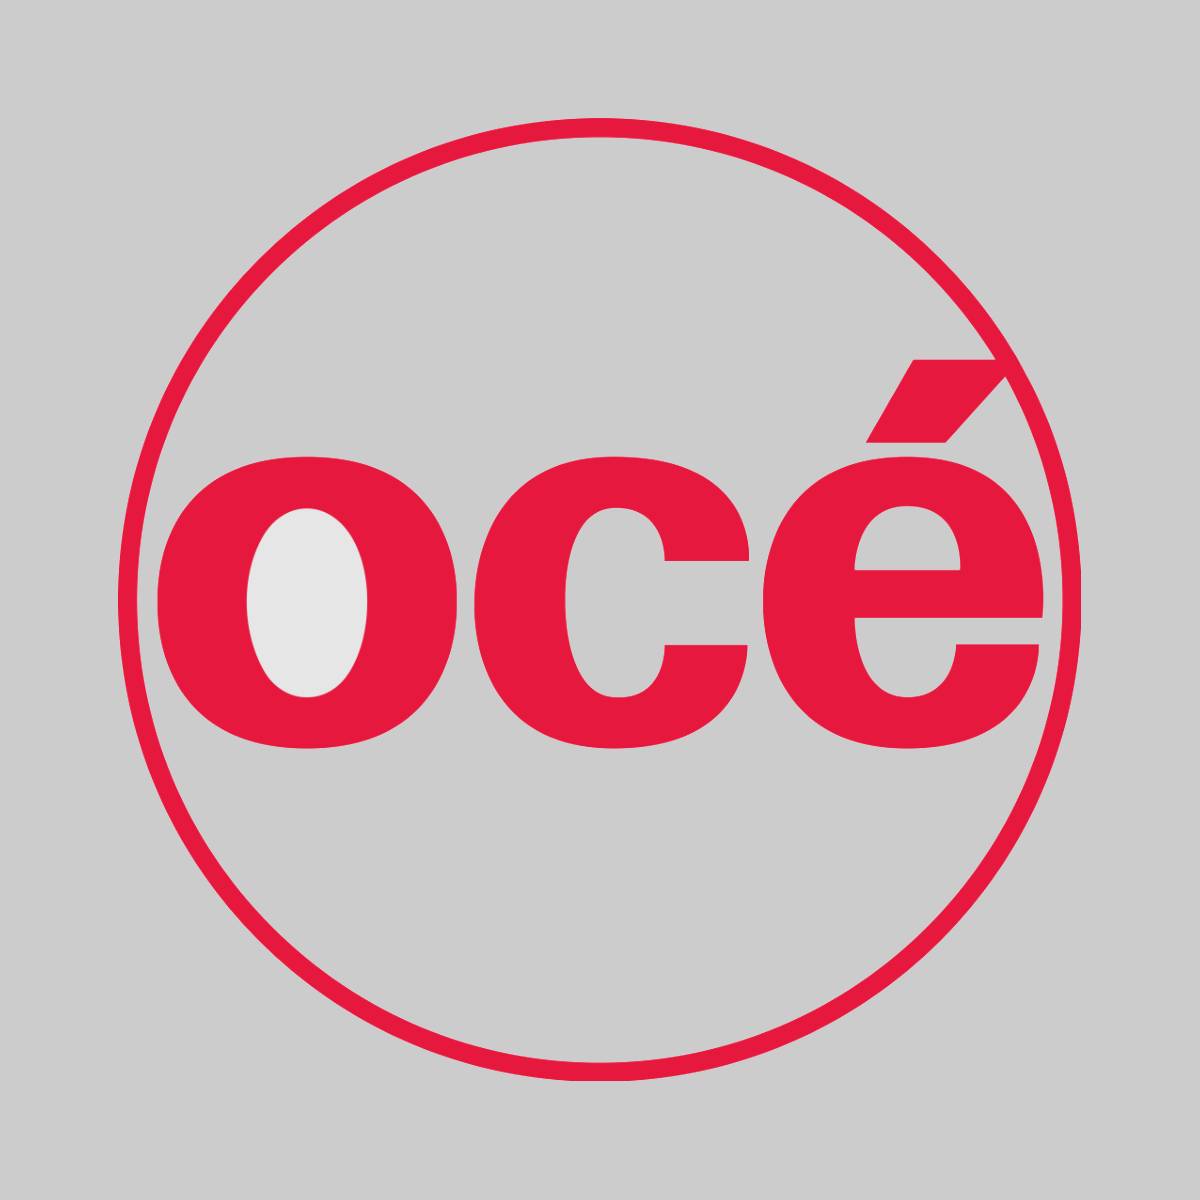 "Original OCE Staples Cartridge 29701465 für Oce CPS-700 CPS-900 NEU OVP